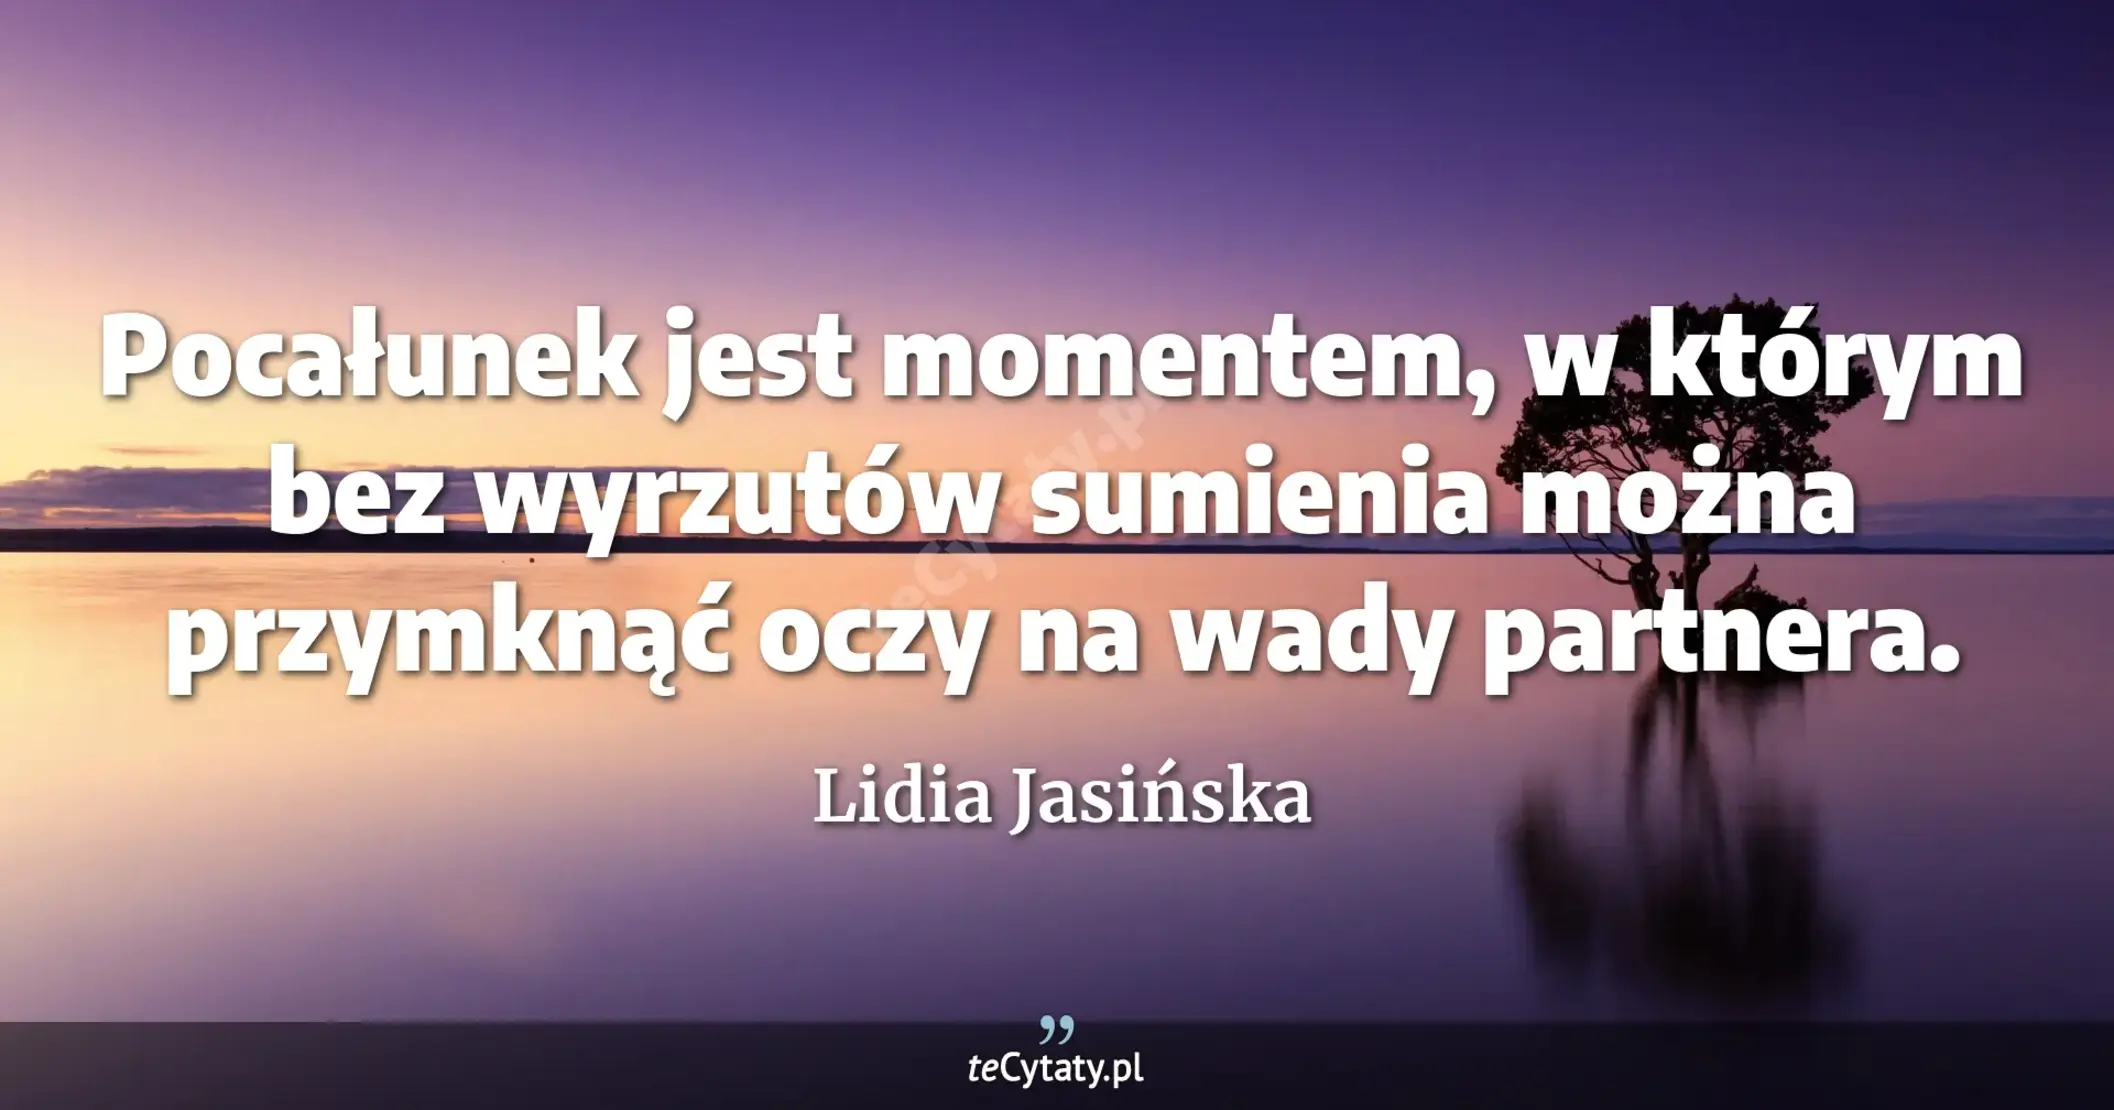 Pocałunek jest momentem, w którym bez wyrzutów sumienia można przymknąć oczy na wady partnera. - Lidia Jasińska